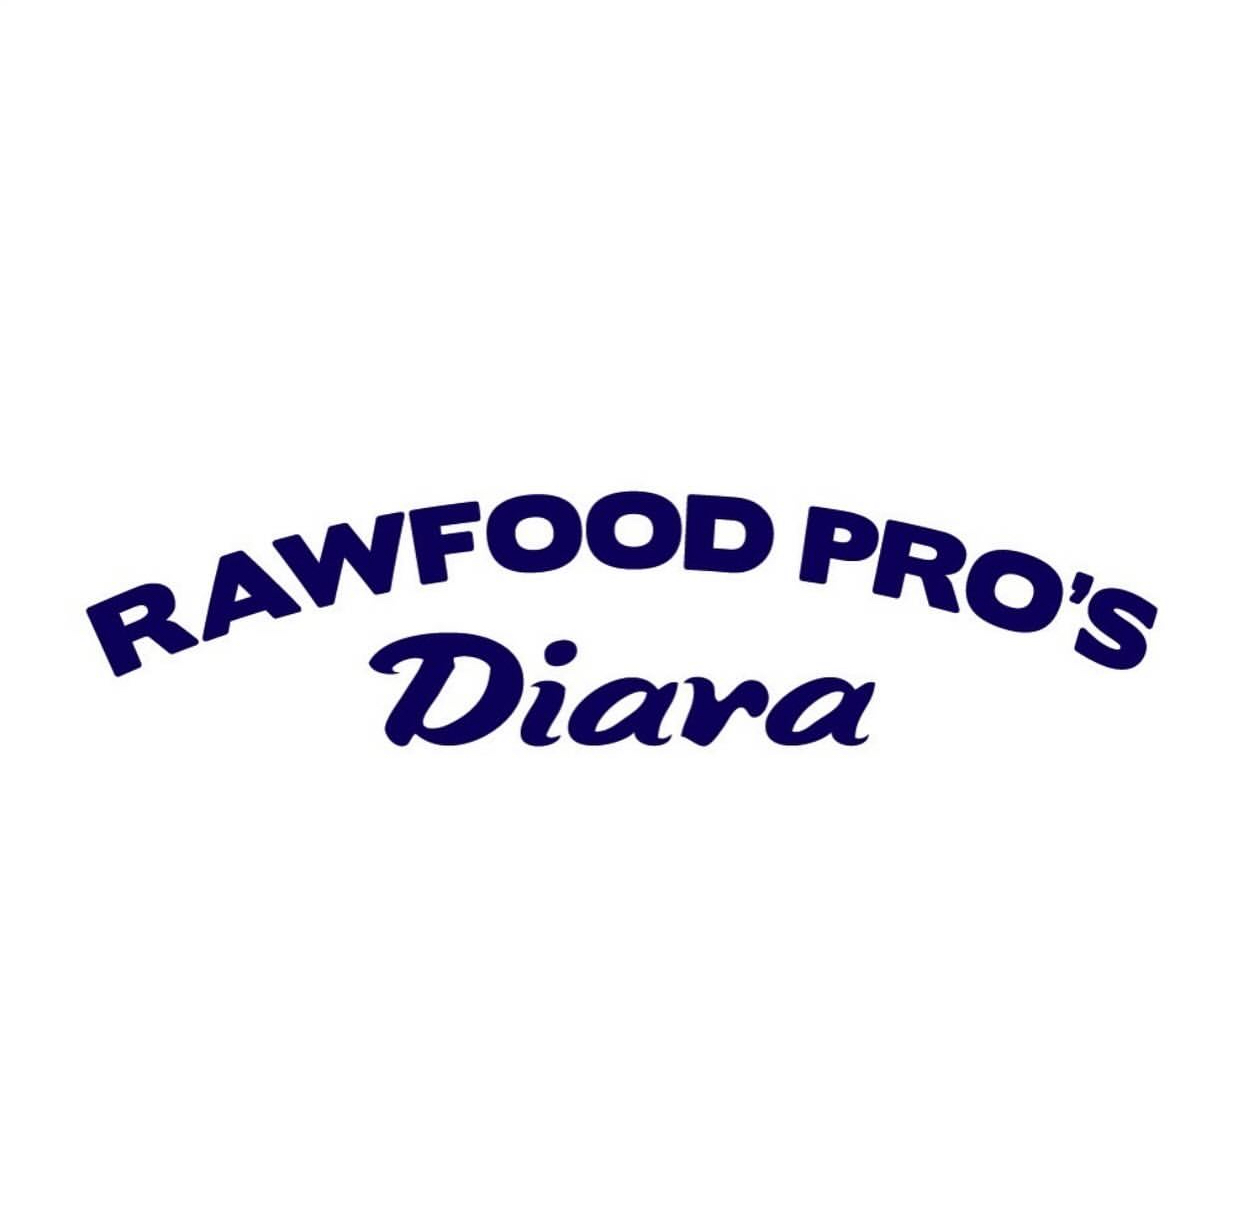 Raw Food Pro’s Diara